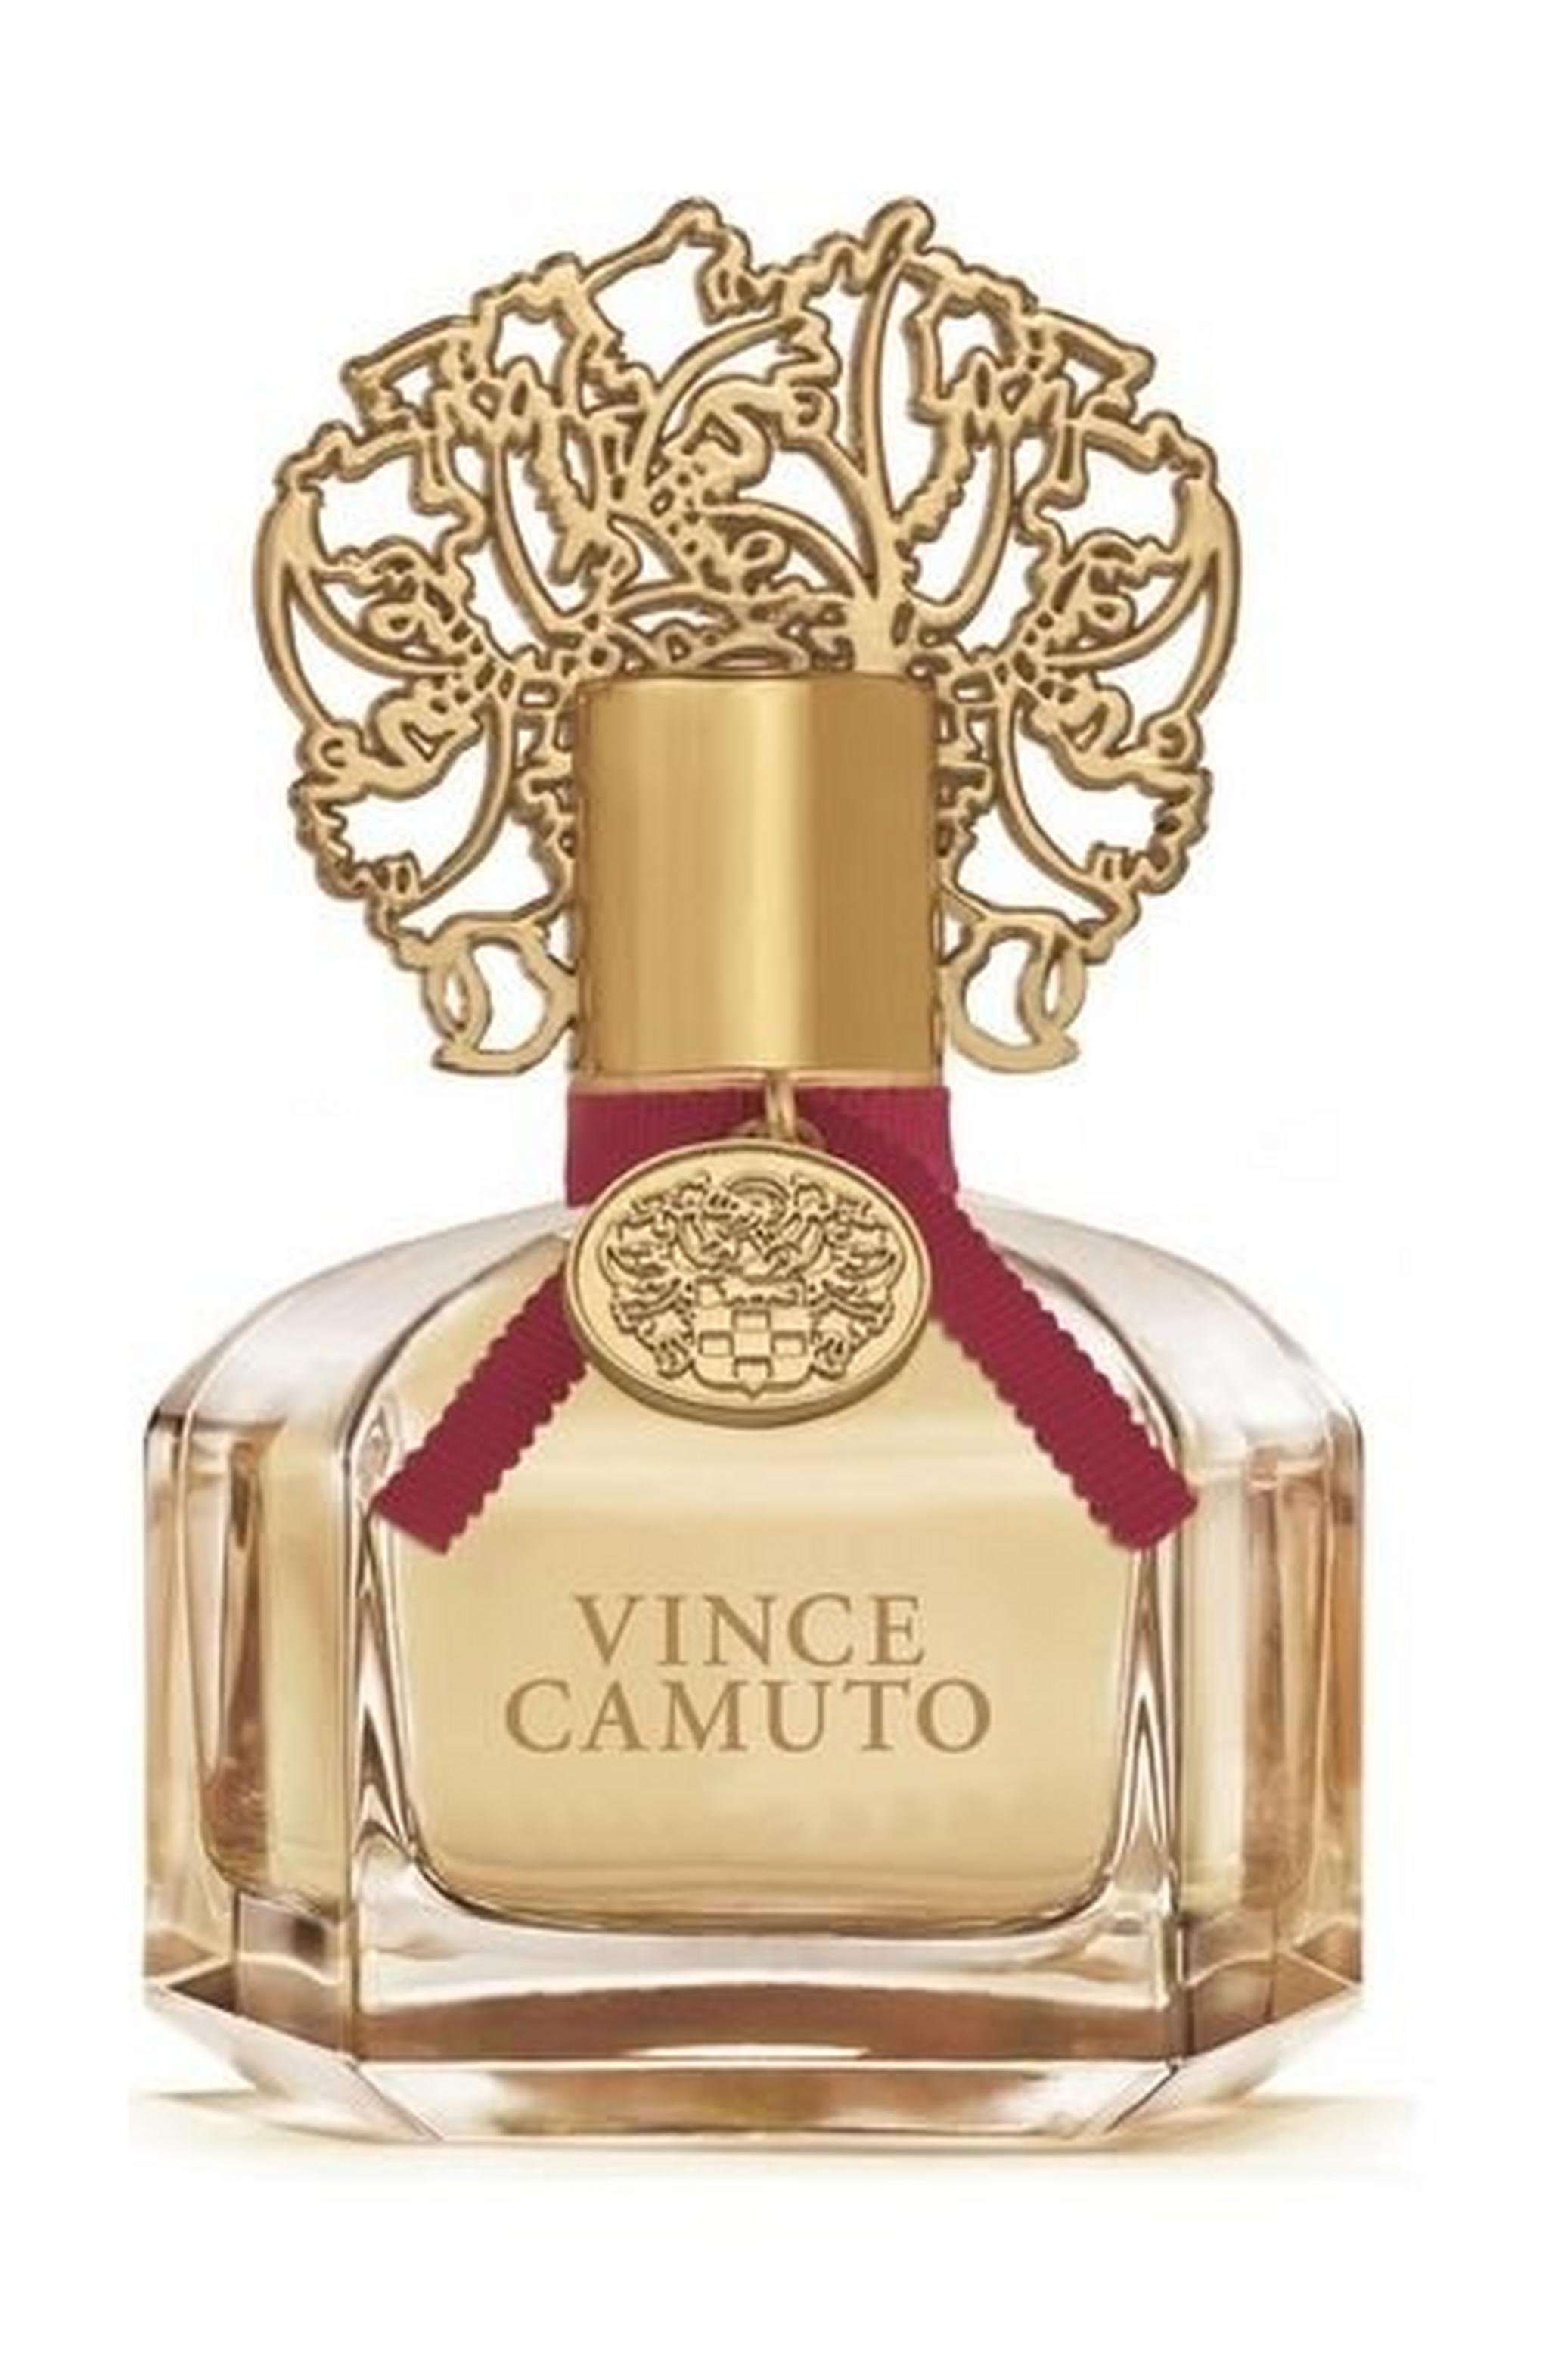 Vince Camuto Original 100ml For Women Eau de Parfum